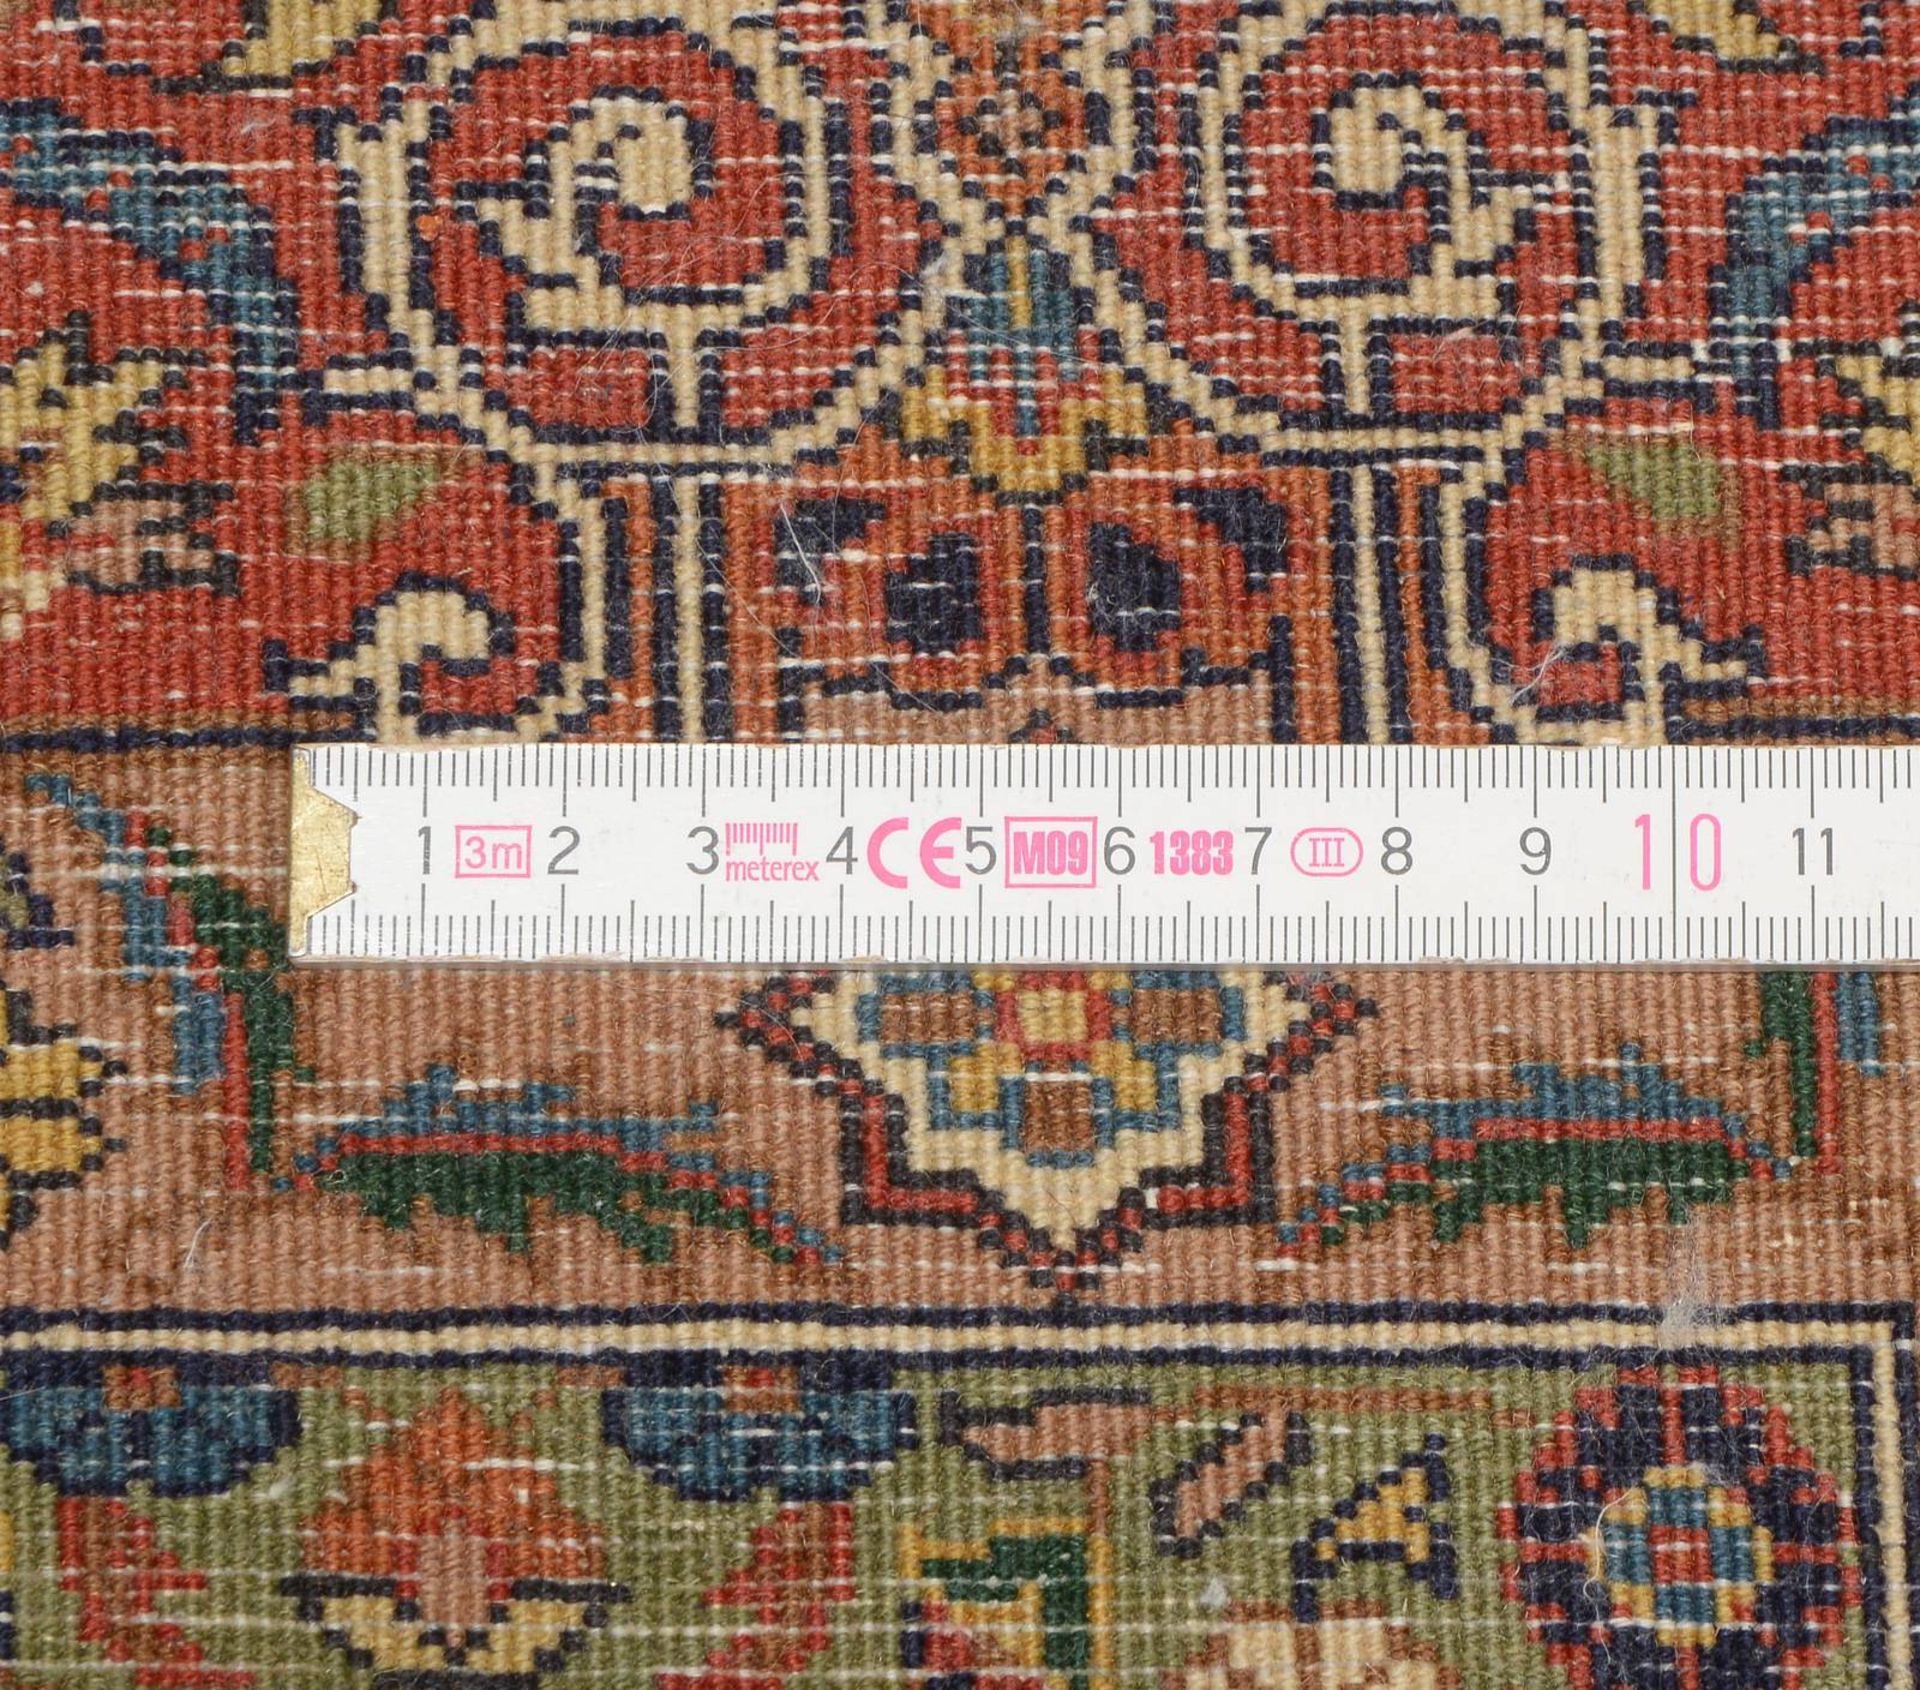 Orientbr&uuml;cke, mittelfeine Kn&uuml;pfung, Flor in gutem Zustand; Ma&szlig;e 166 x 124 cm - Image 2 of 2